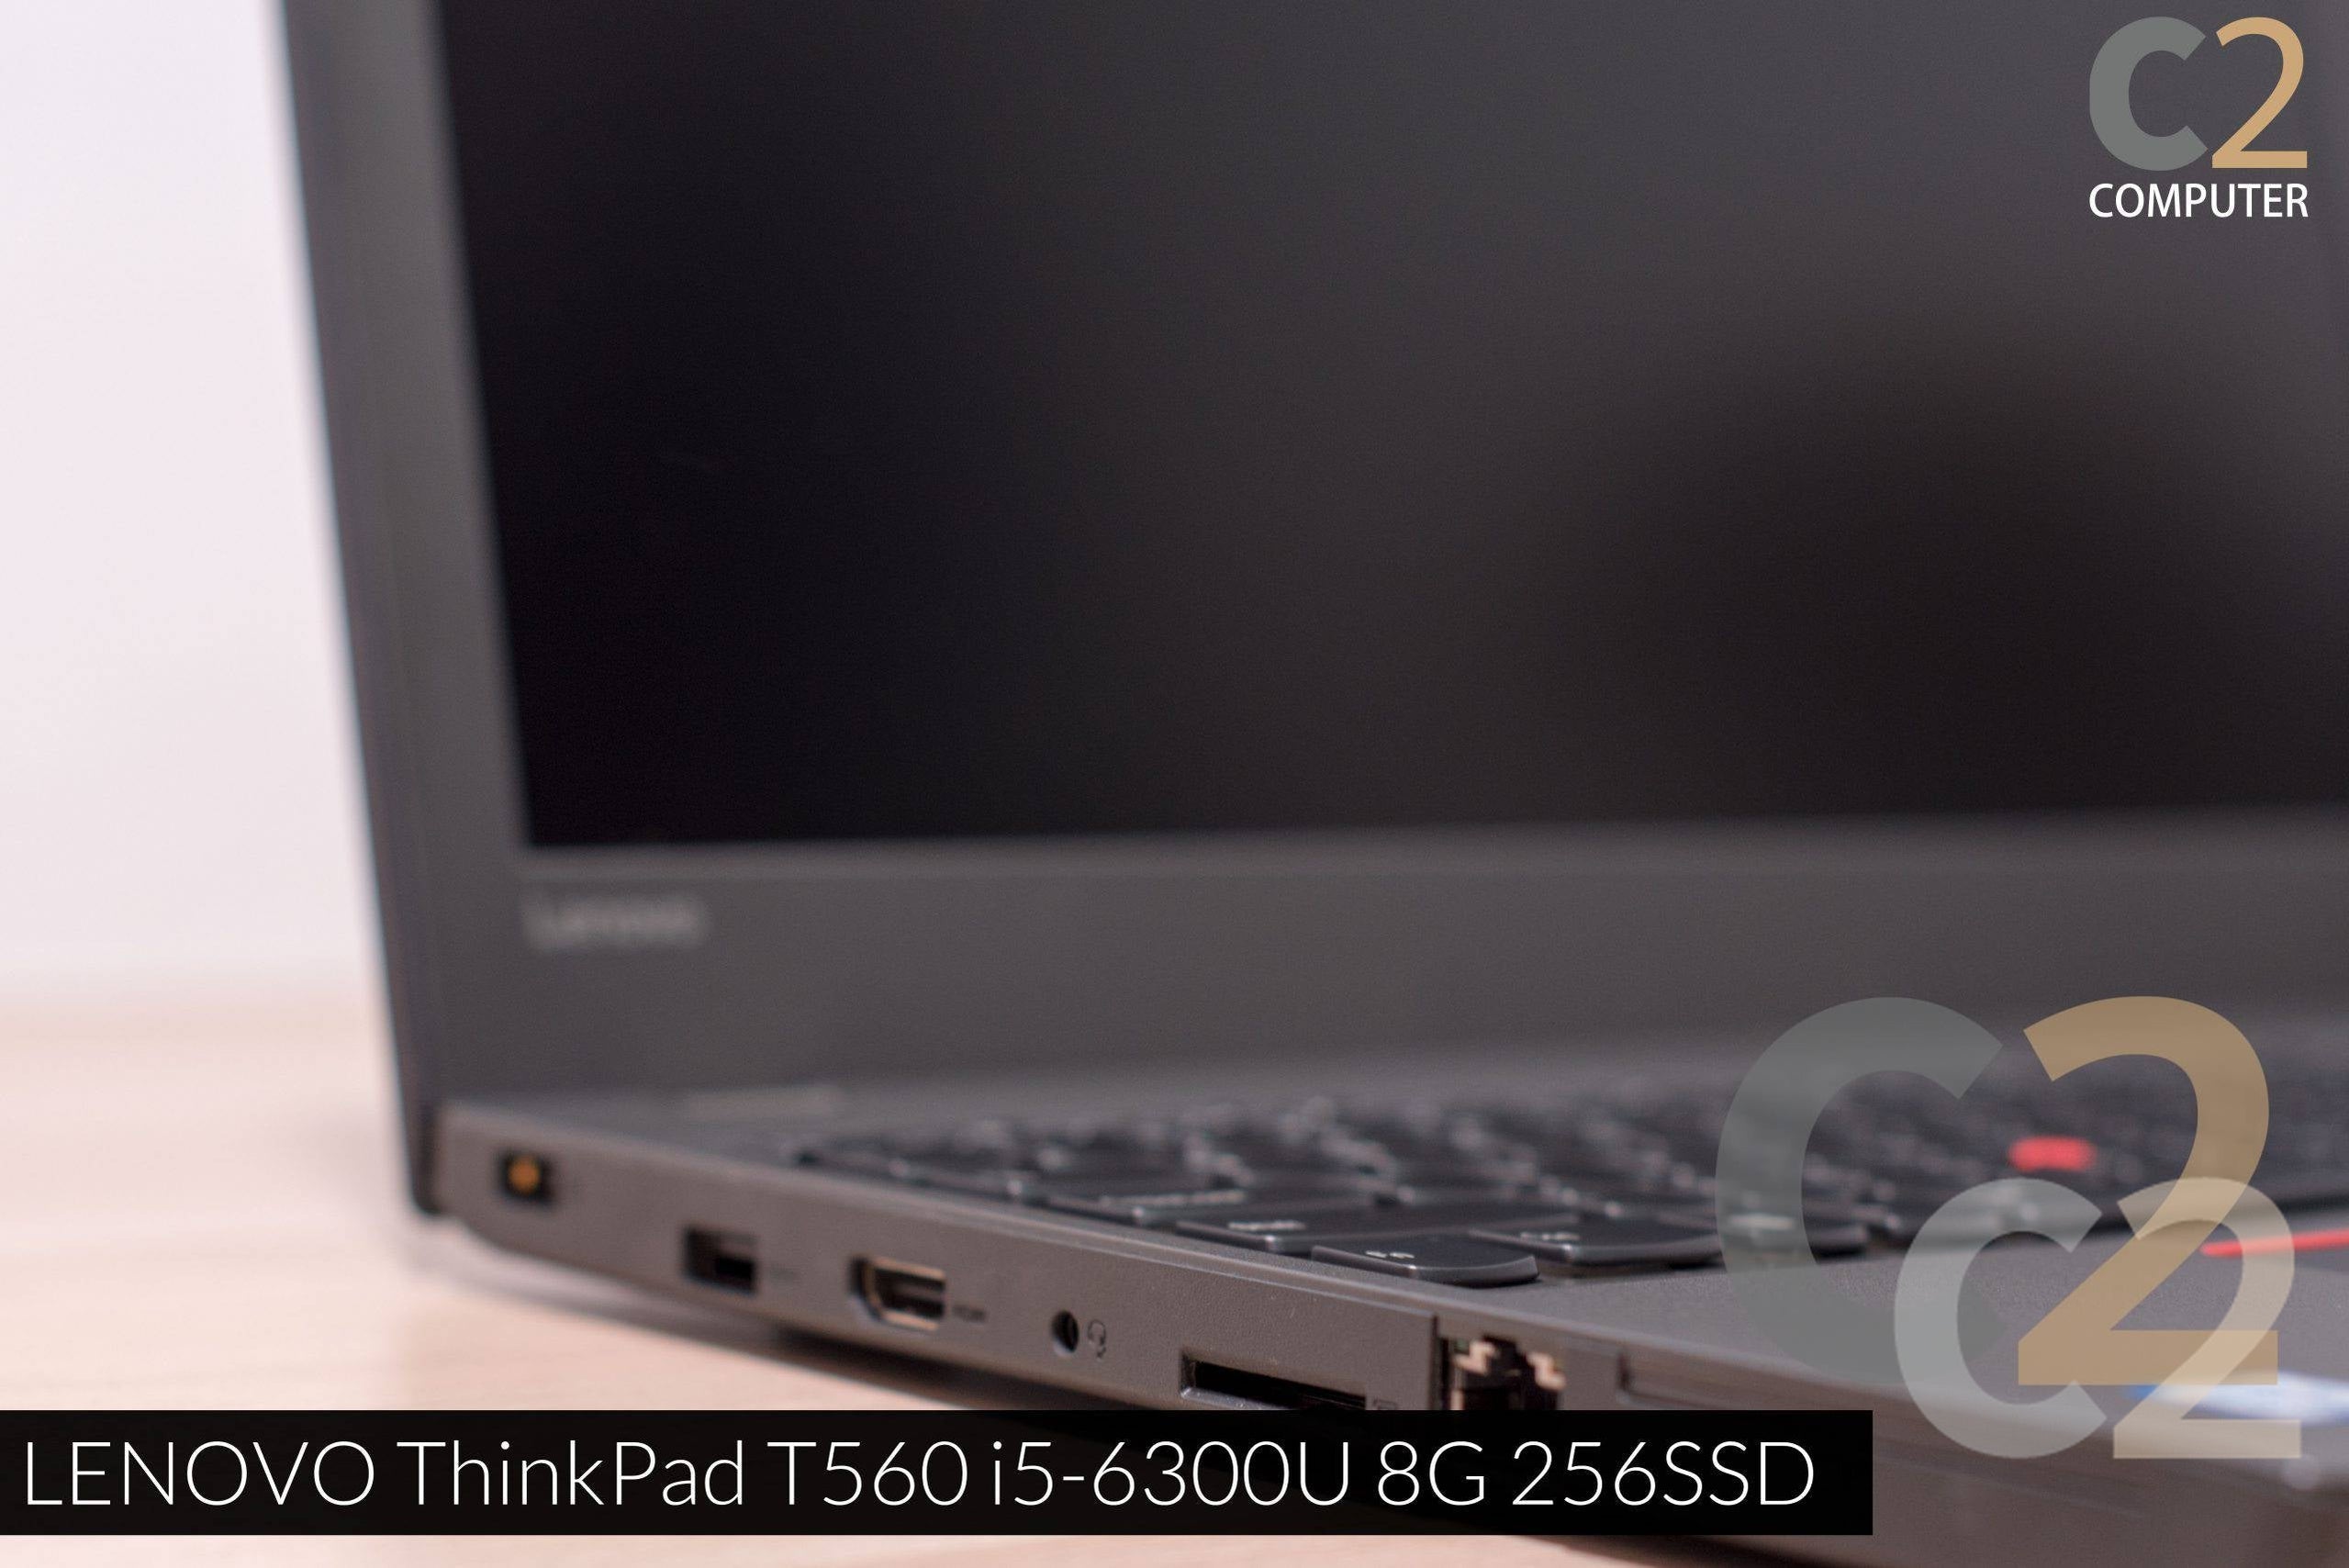 (二手) LENOVO Thinkpad T560 i5-6300U 4G NA 500G HD 520  15.6" 1920x1080  Business Laptop 商務辦公本 95% NEW - C2 Computer